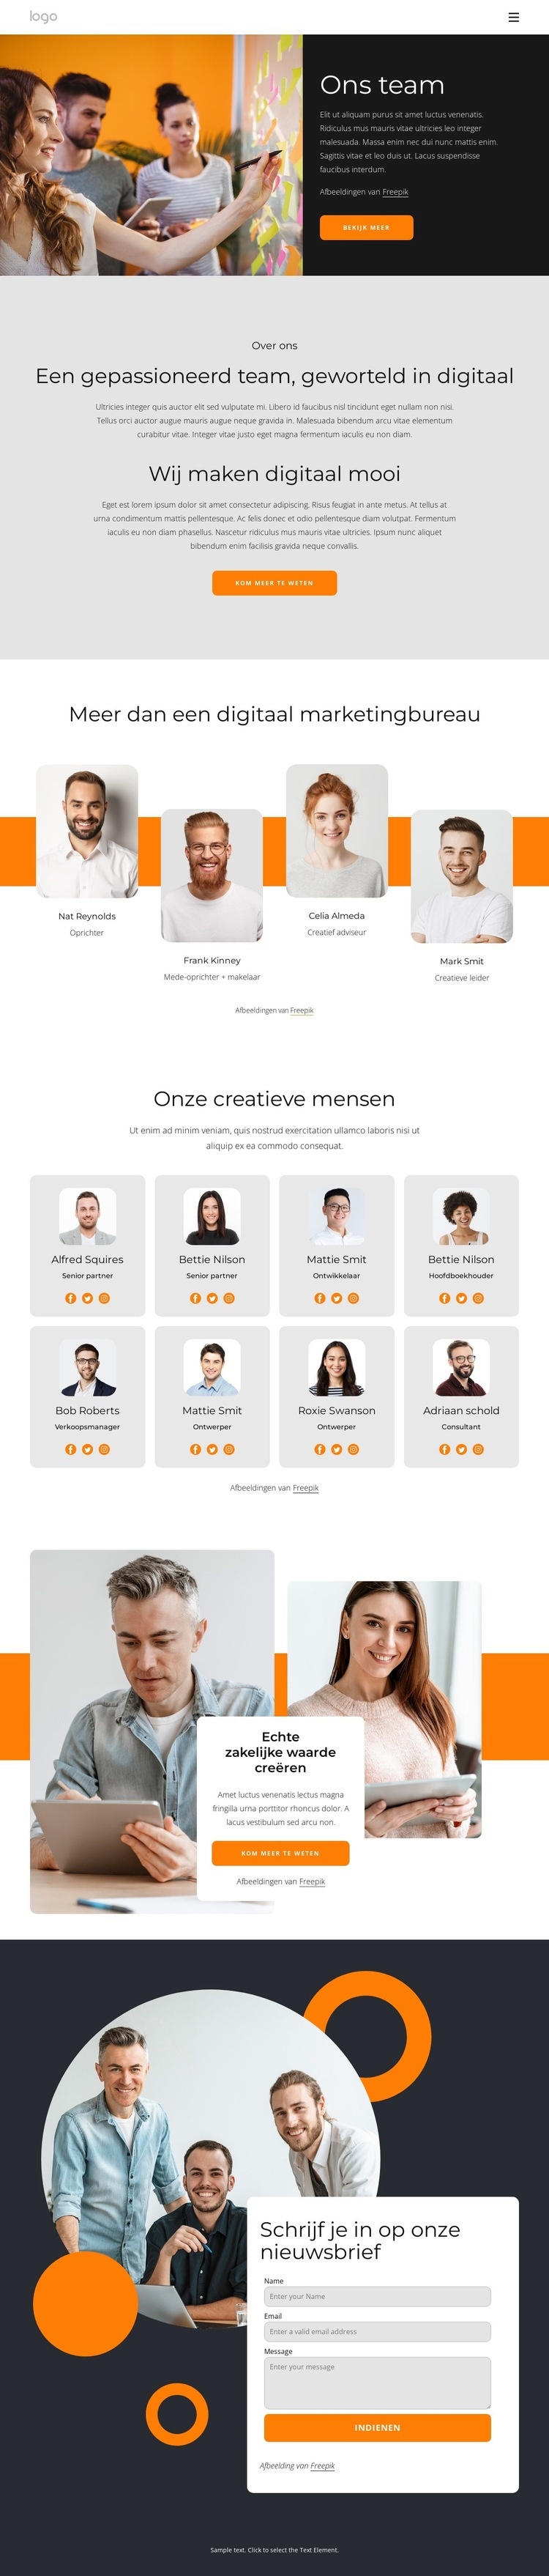 We zijn creatieve mensen met grote dromen Website ontwerp